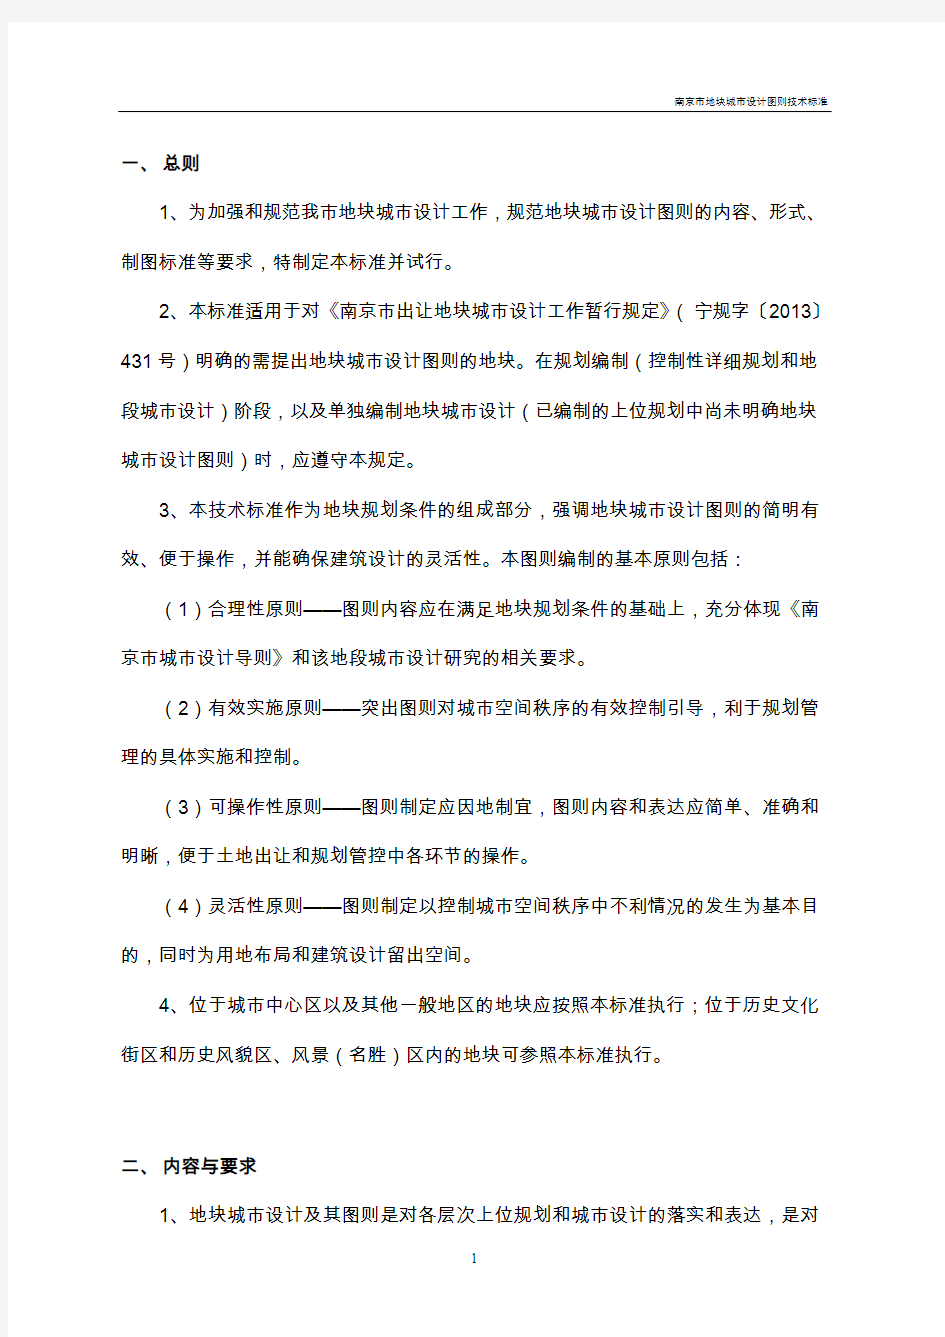 南京控制性详细规划计算机辅助制图规范及成果归档数据标准